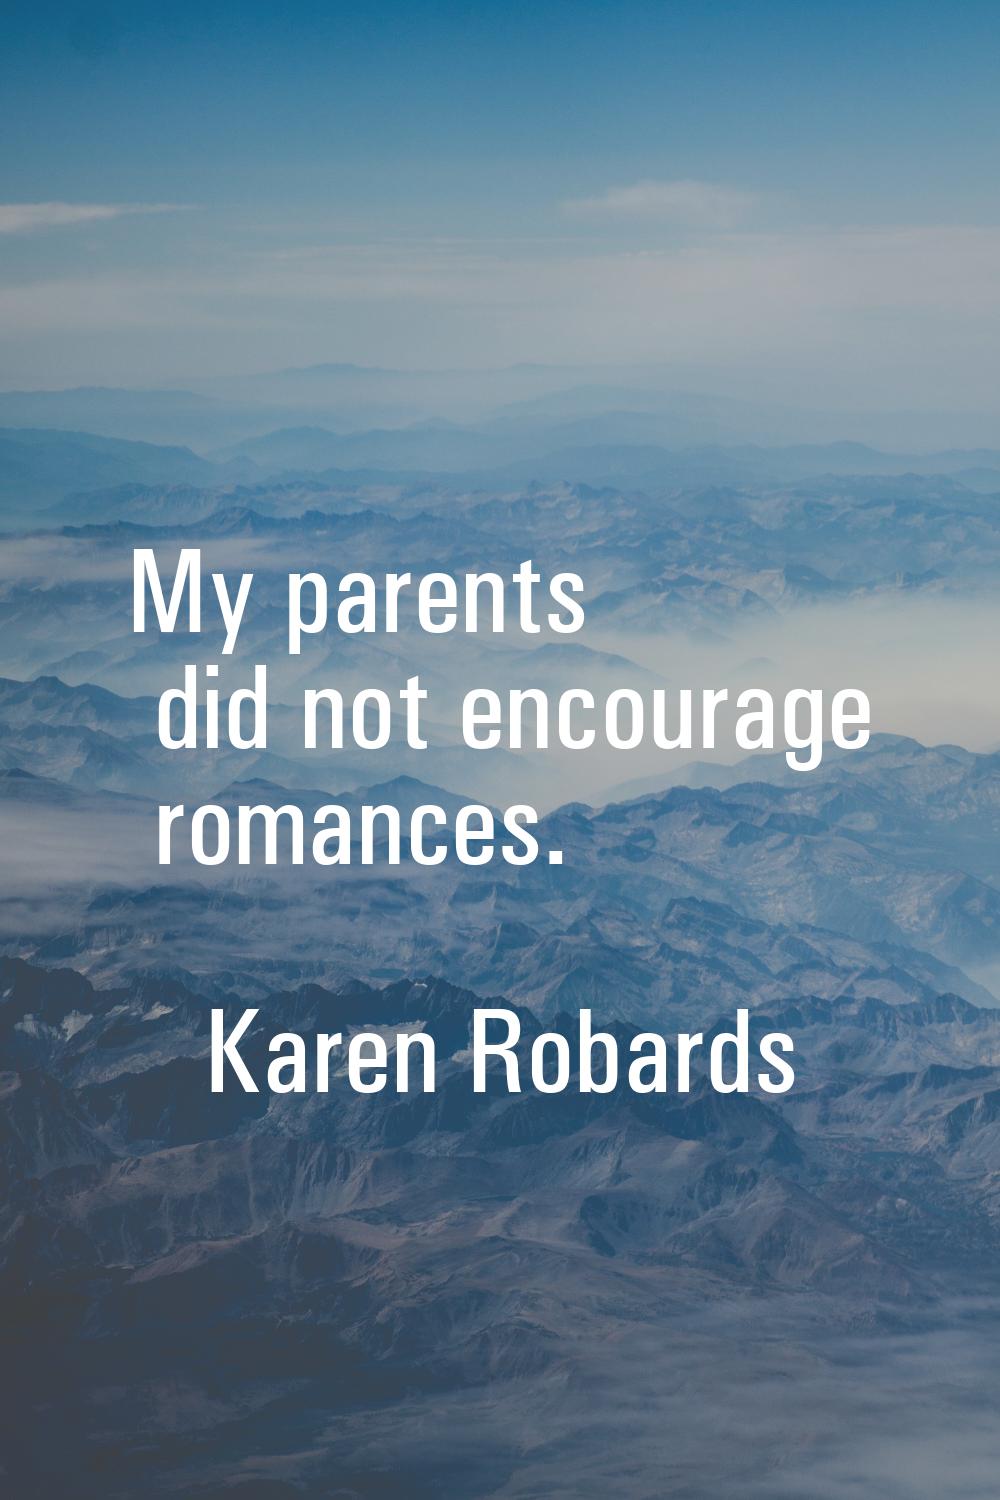 My parents did not encourage romances.